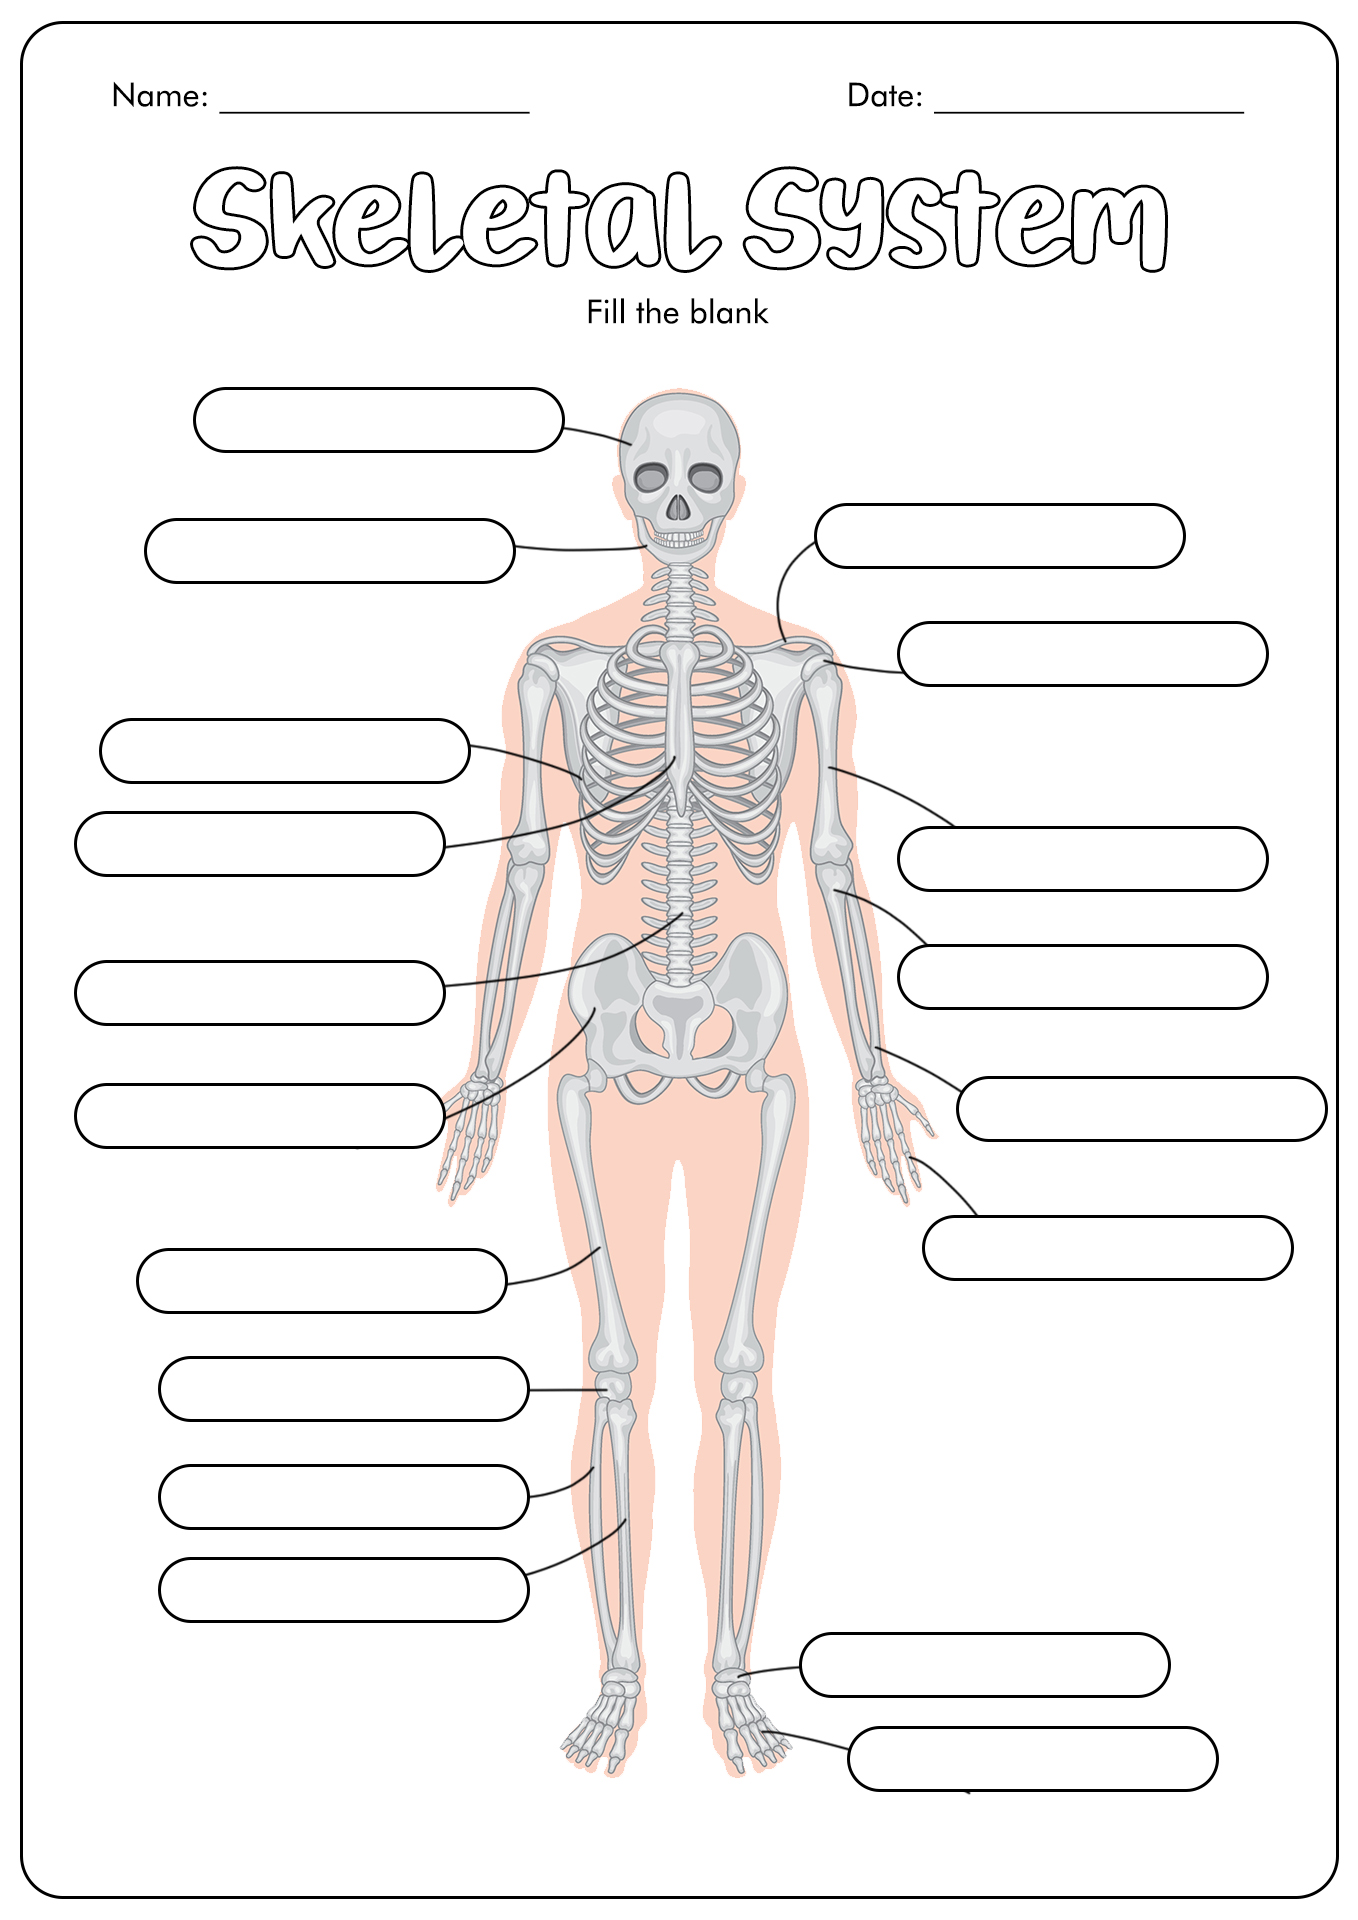 Unlabeled Skeletal System Image